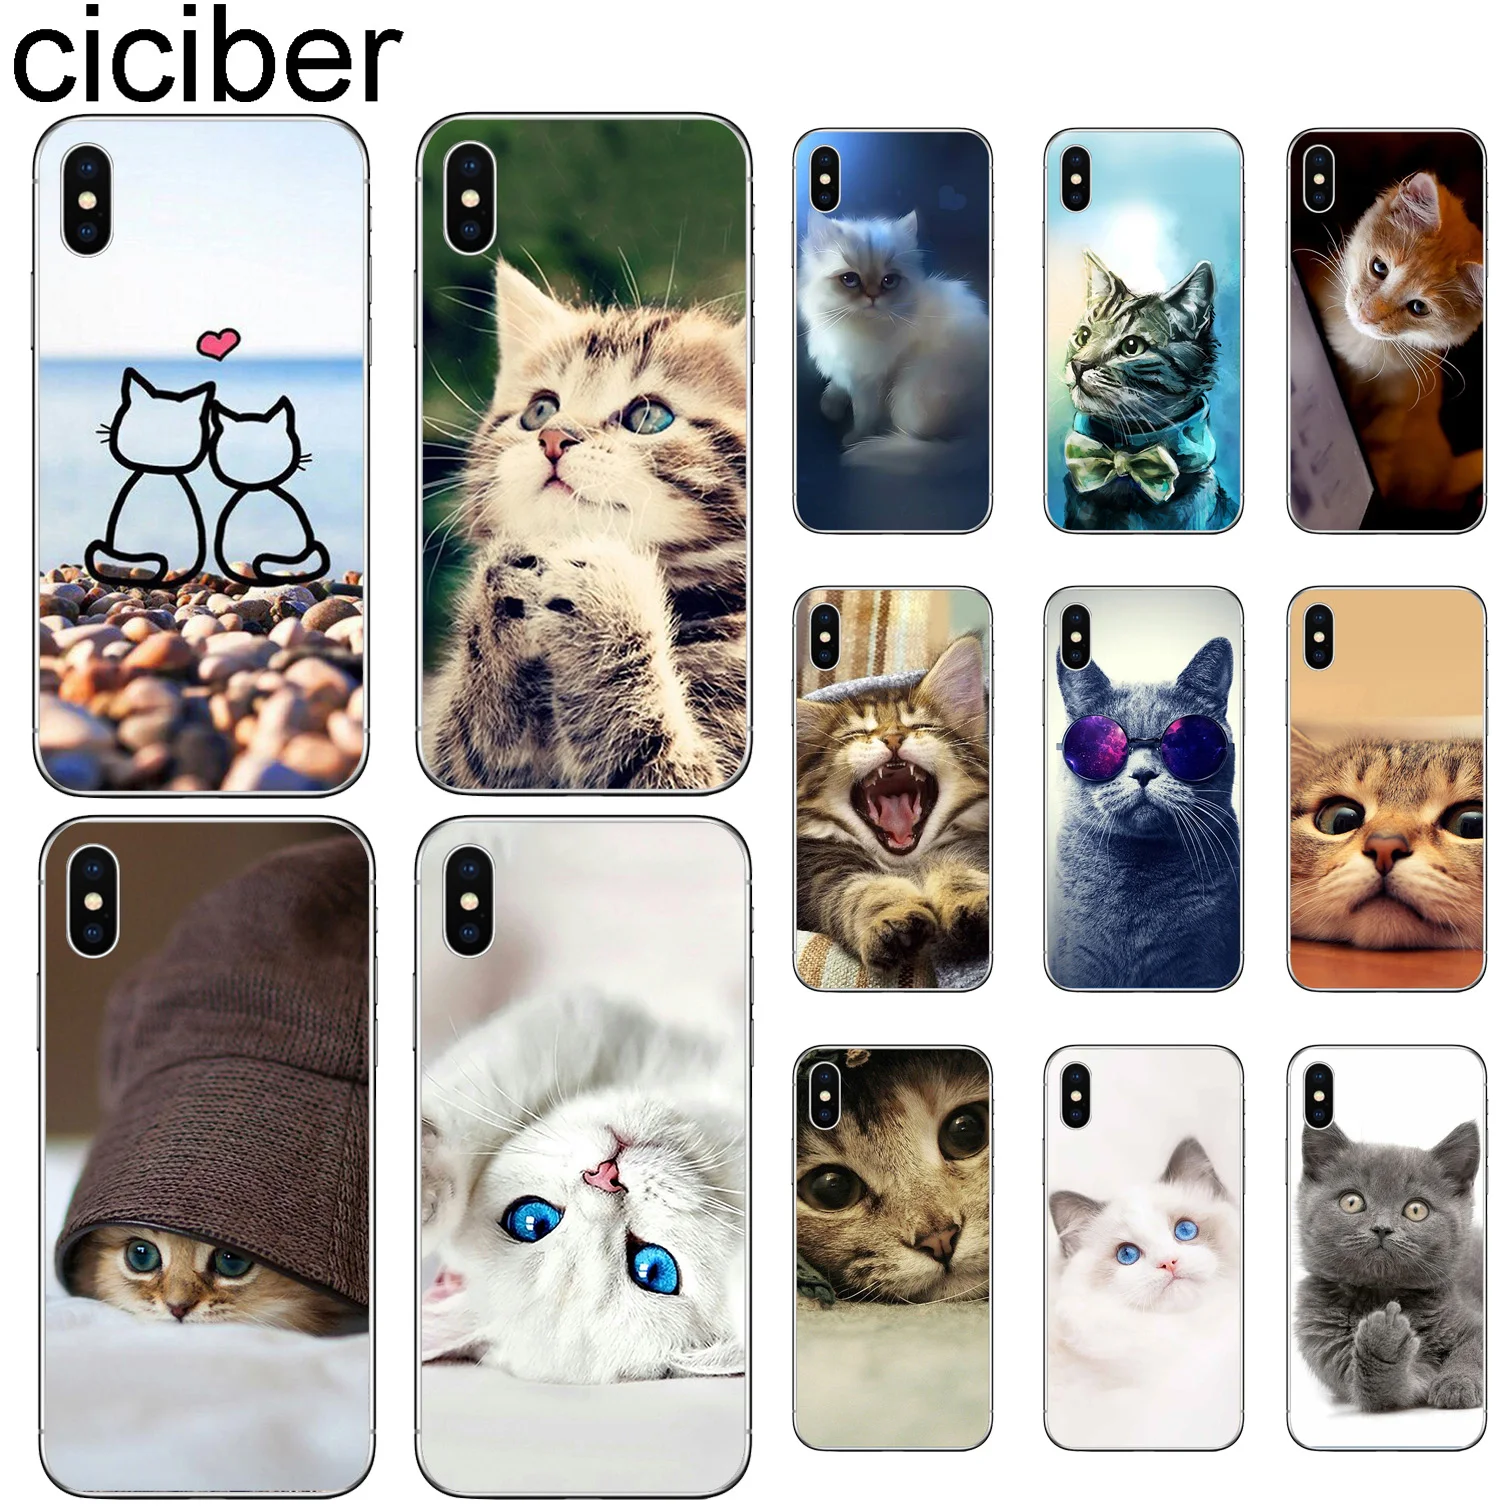 Чехлы для телефонов ciciber с милым котом котенком для iPhone 11 Pro XR X XS MAX Funda Coque для Iphone 7 8 5S 6 6S Plus SE Мягкий ТПУ чехол Капа